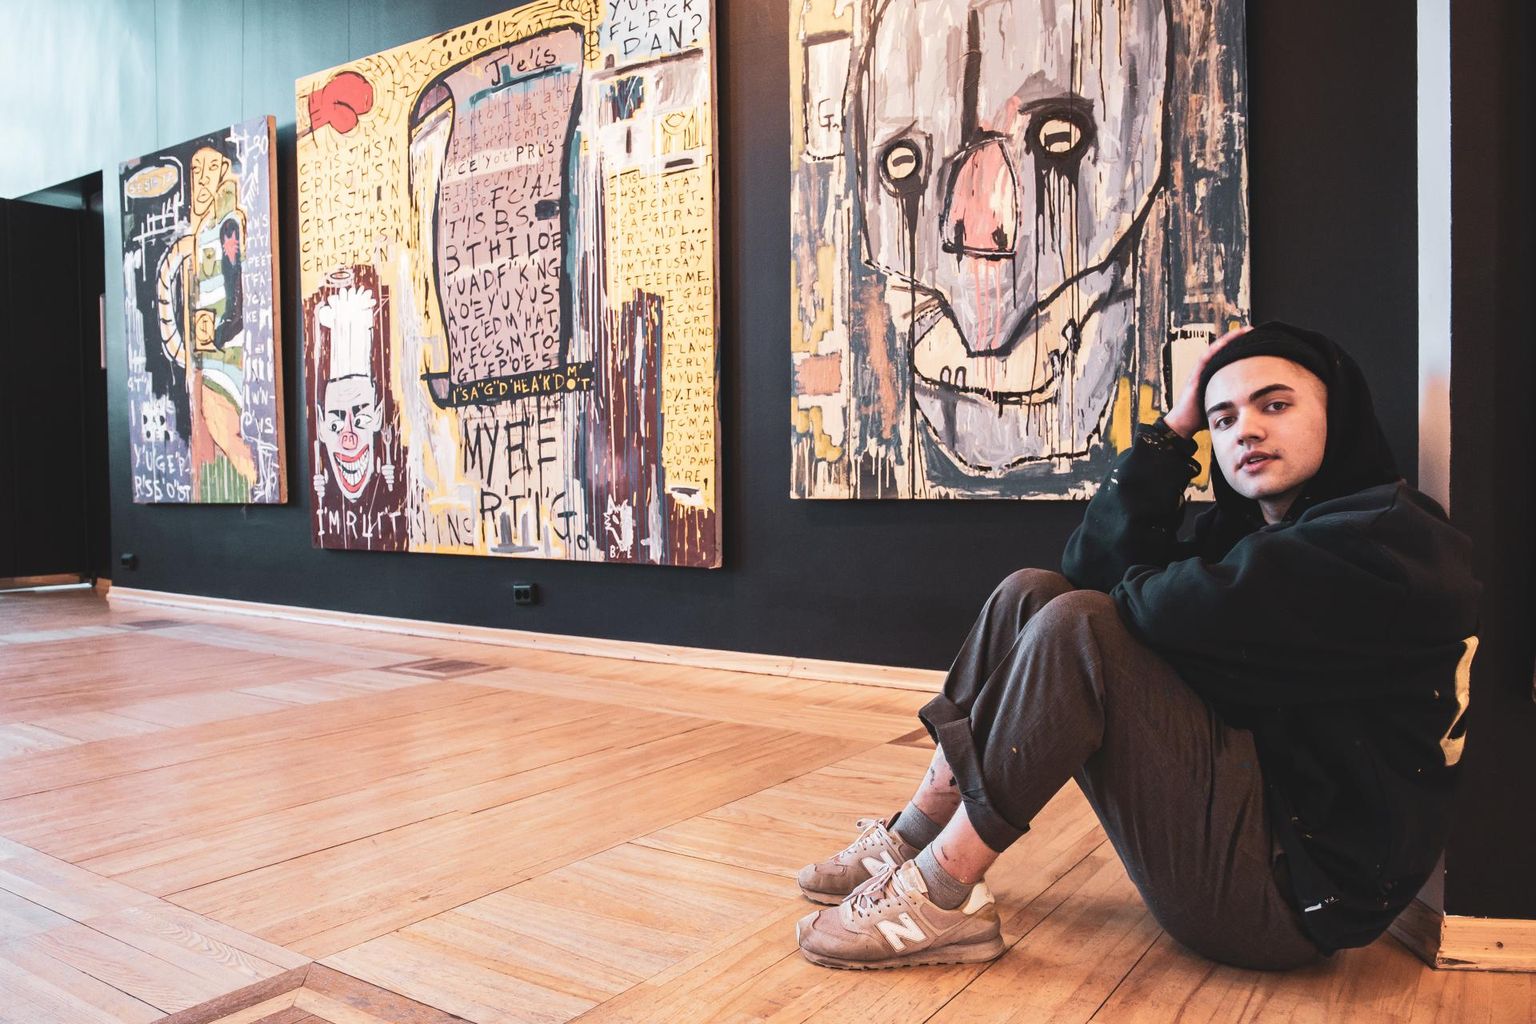 18aastane Robert Puumeister alustas maalimisega tõsisemalt aasta ja kümme kuud tagasi, mil nägi Instagramis USA kunstniku Jean-Michel Basquiat&#39; teost "Untitled 1982".